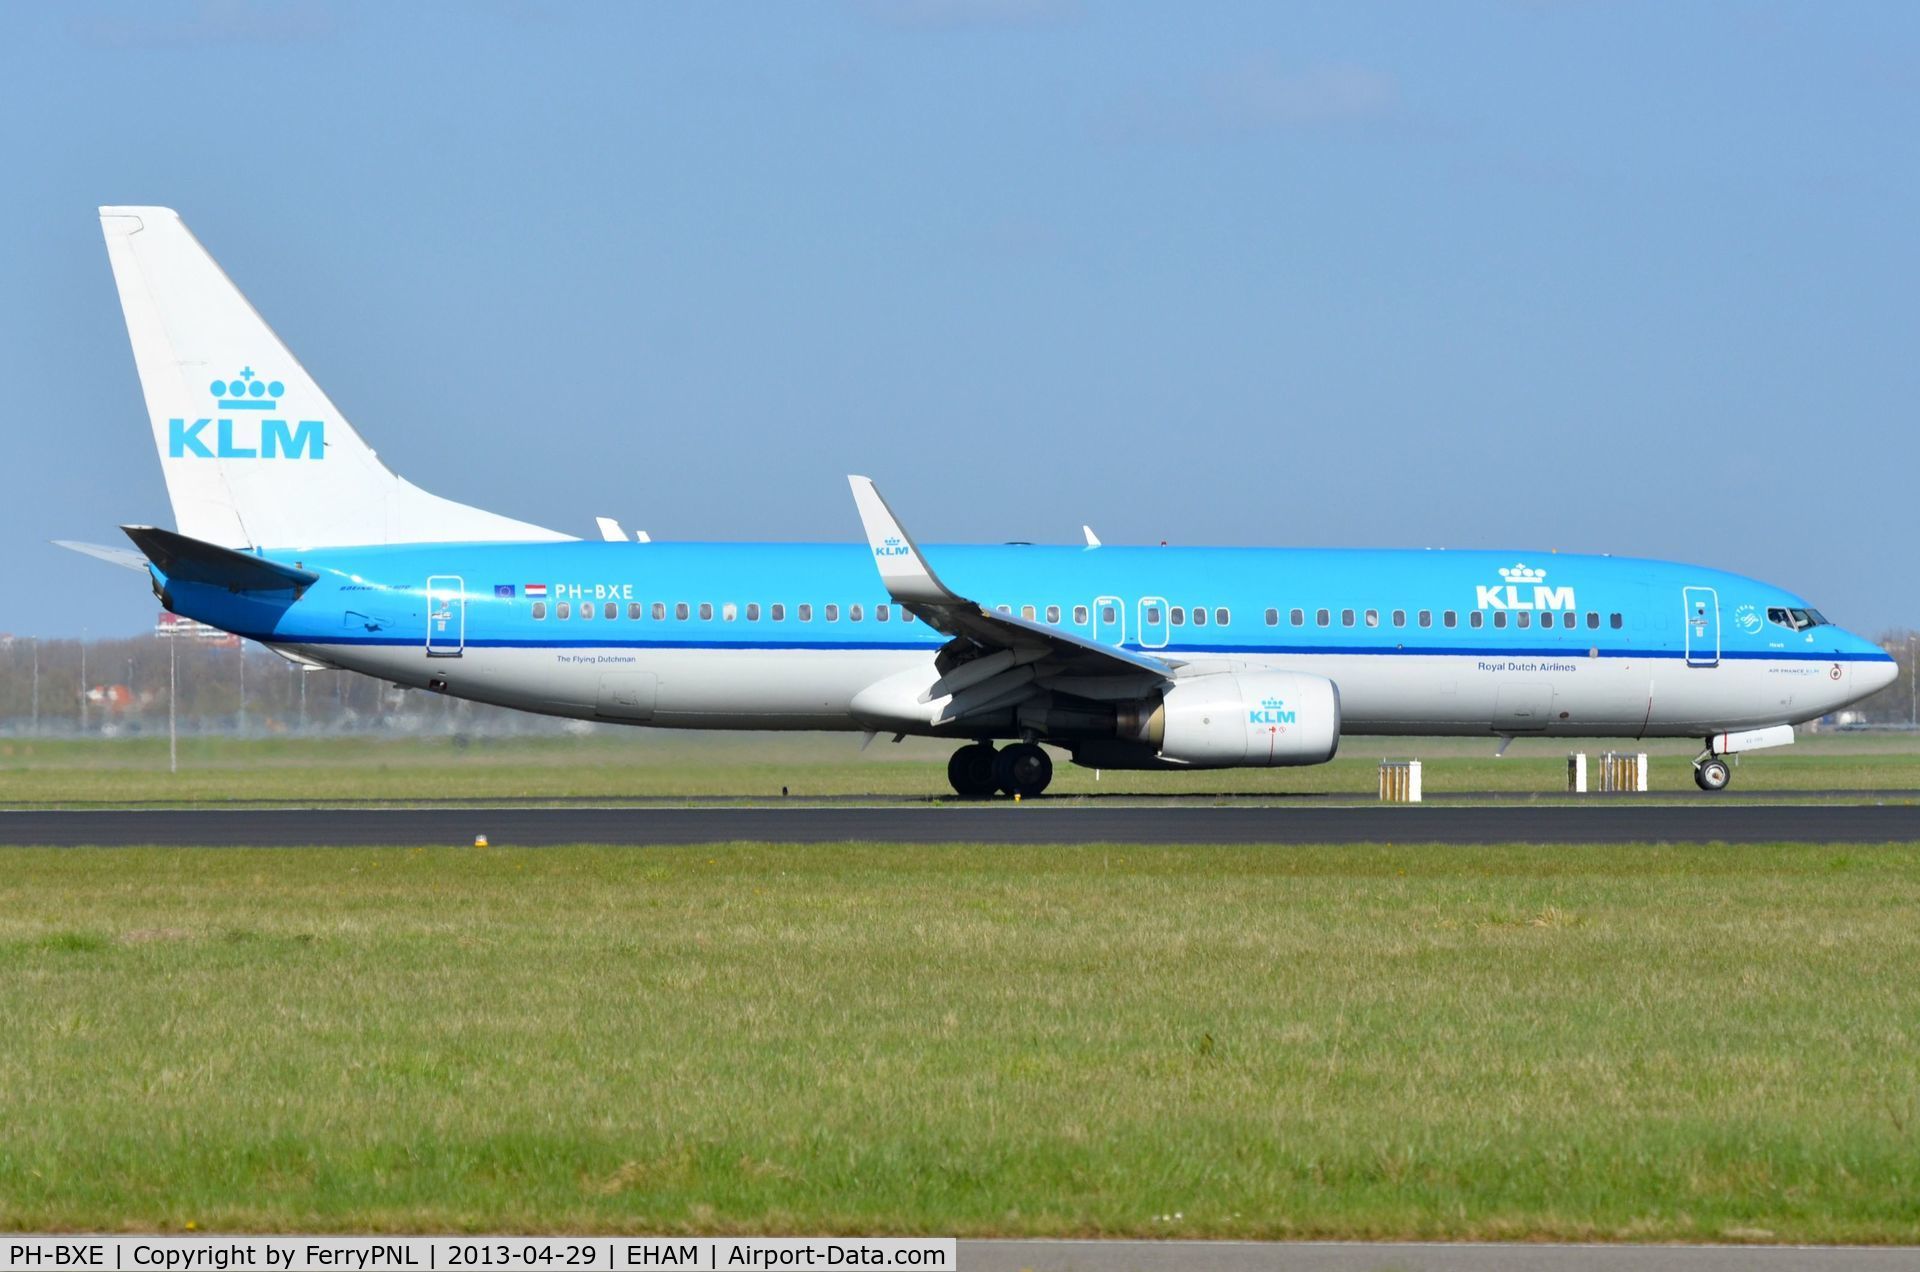 PH-BXE, 2000 Boeing 737-8K2 C/N 29595, KLM B738 vacating runway.